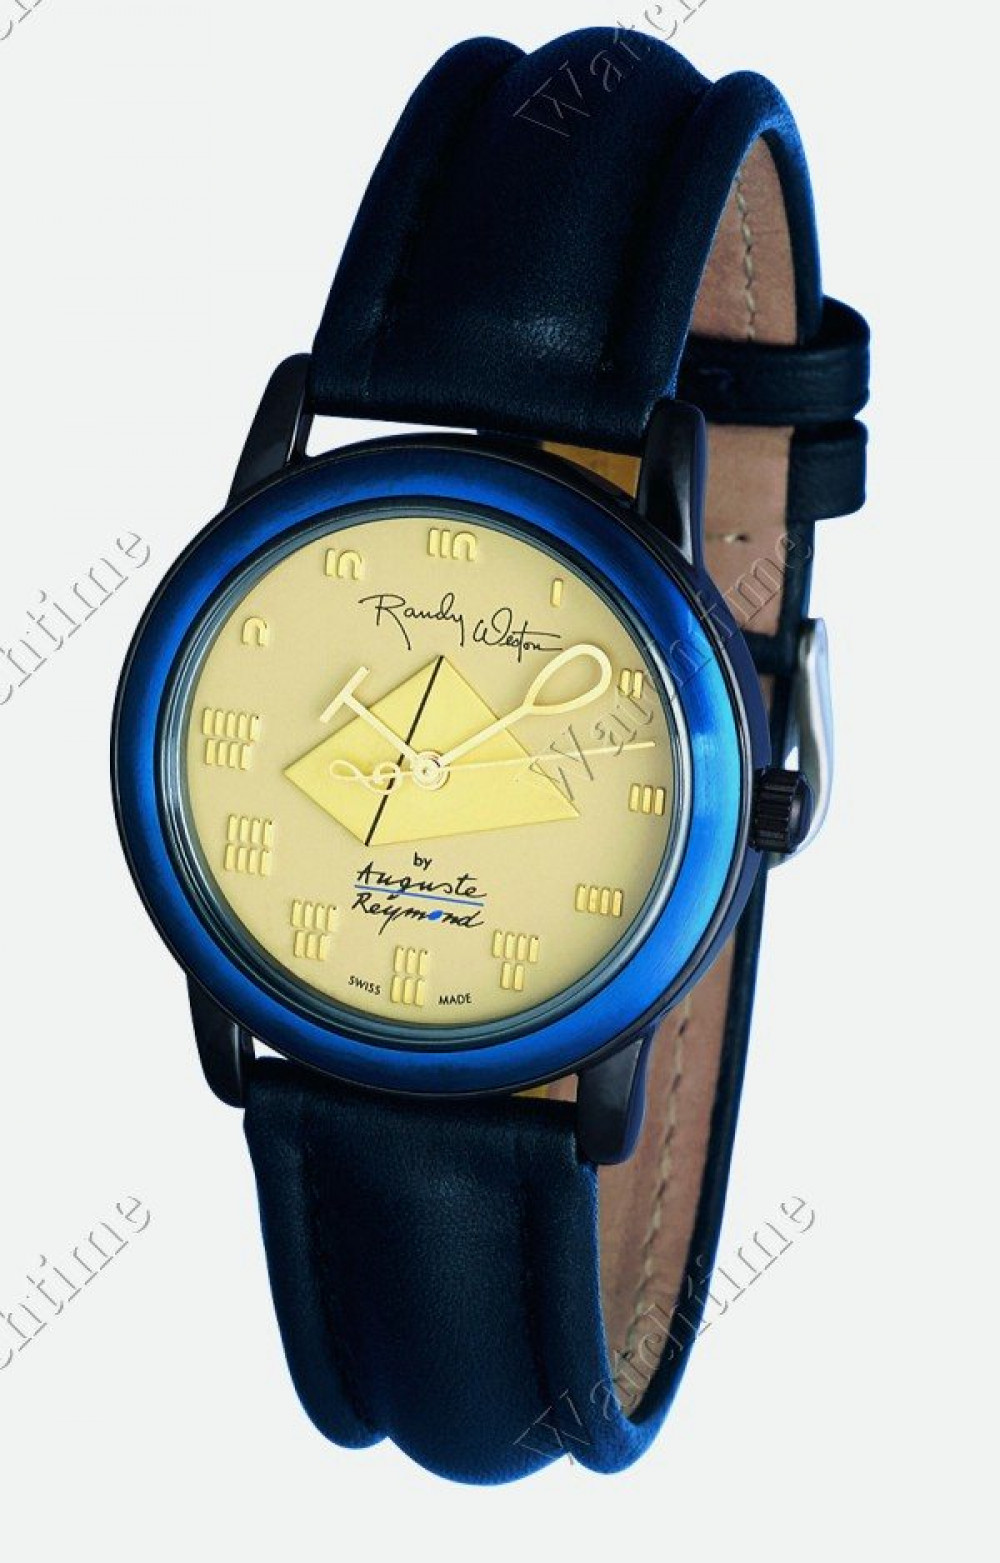 Zegarek firmy Auguste Reymond, model Randy Weston